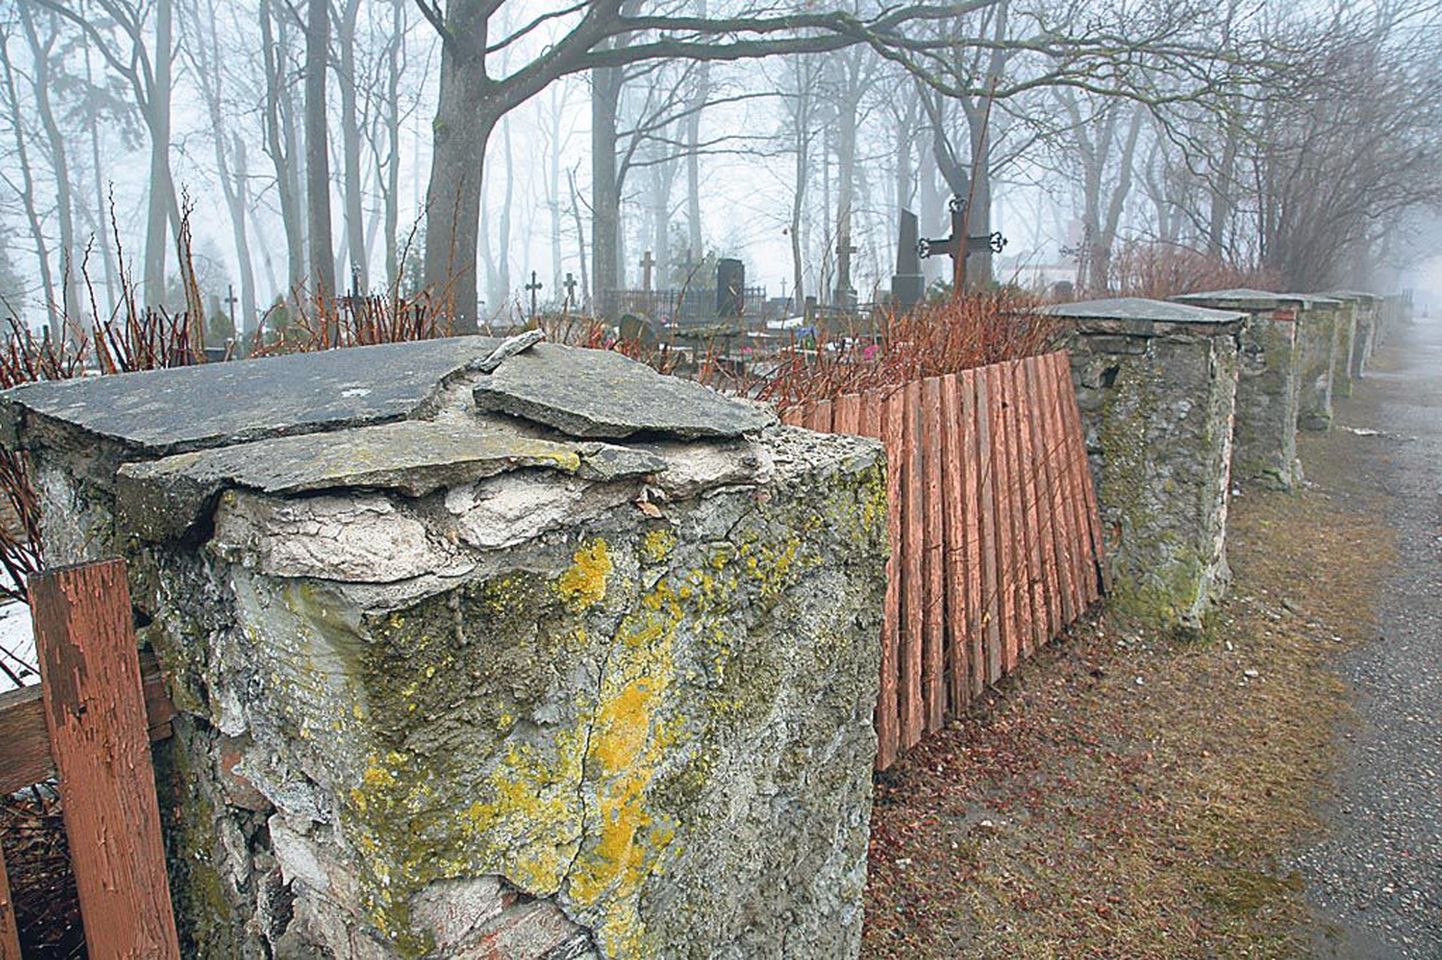 Vana-Pärnu kalmistu hullusti mäda aia renoveerimise projekt on tehtud enne masu. Seepärast pole kavandatu praegu jõukohane ning aed korrastatakse jupp haaval.